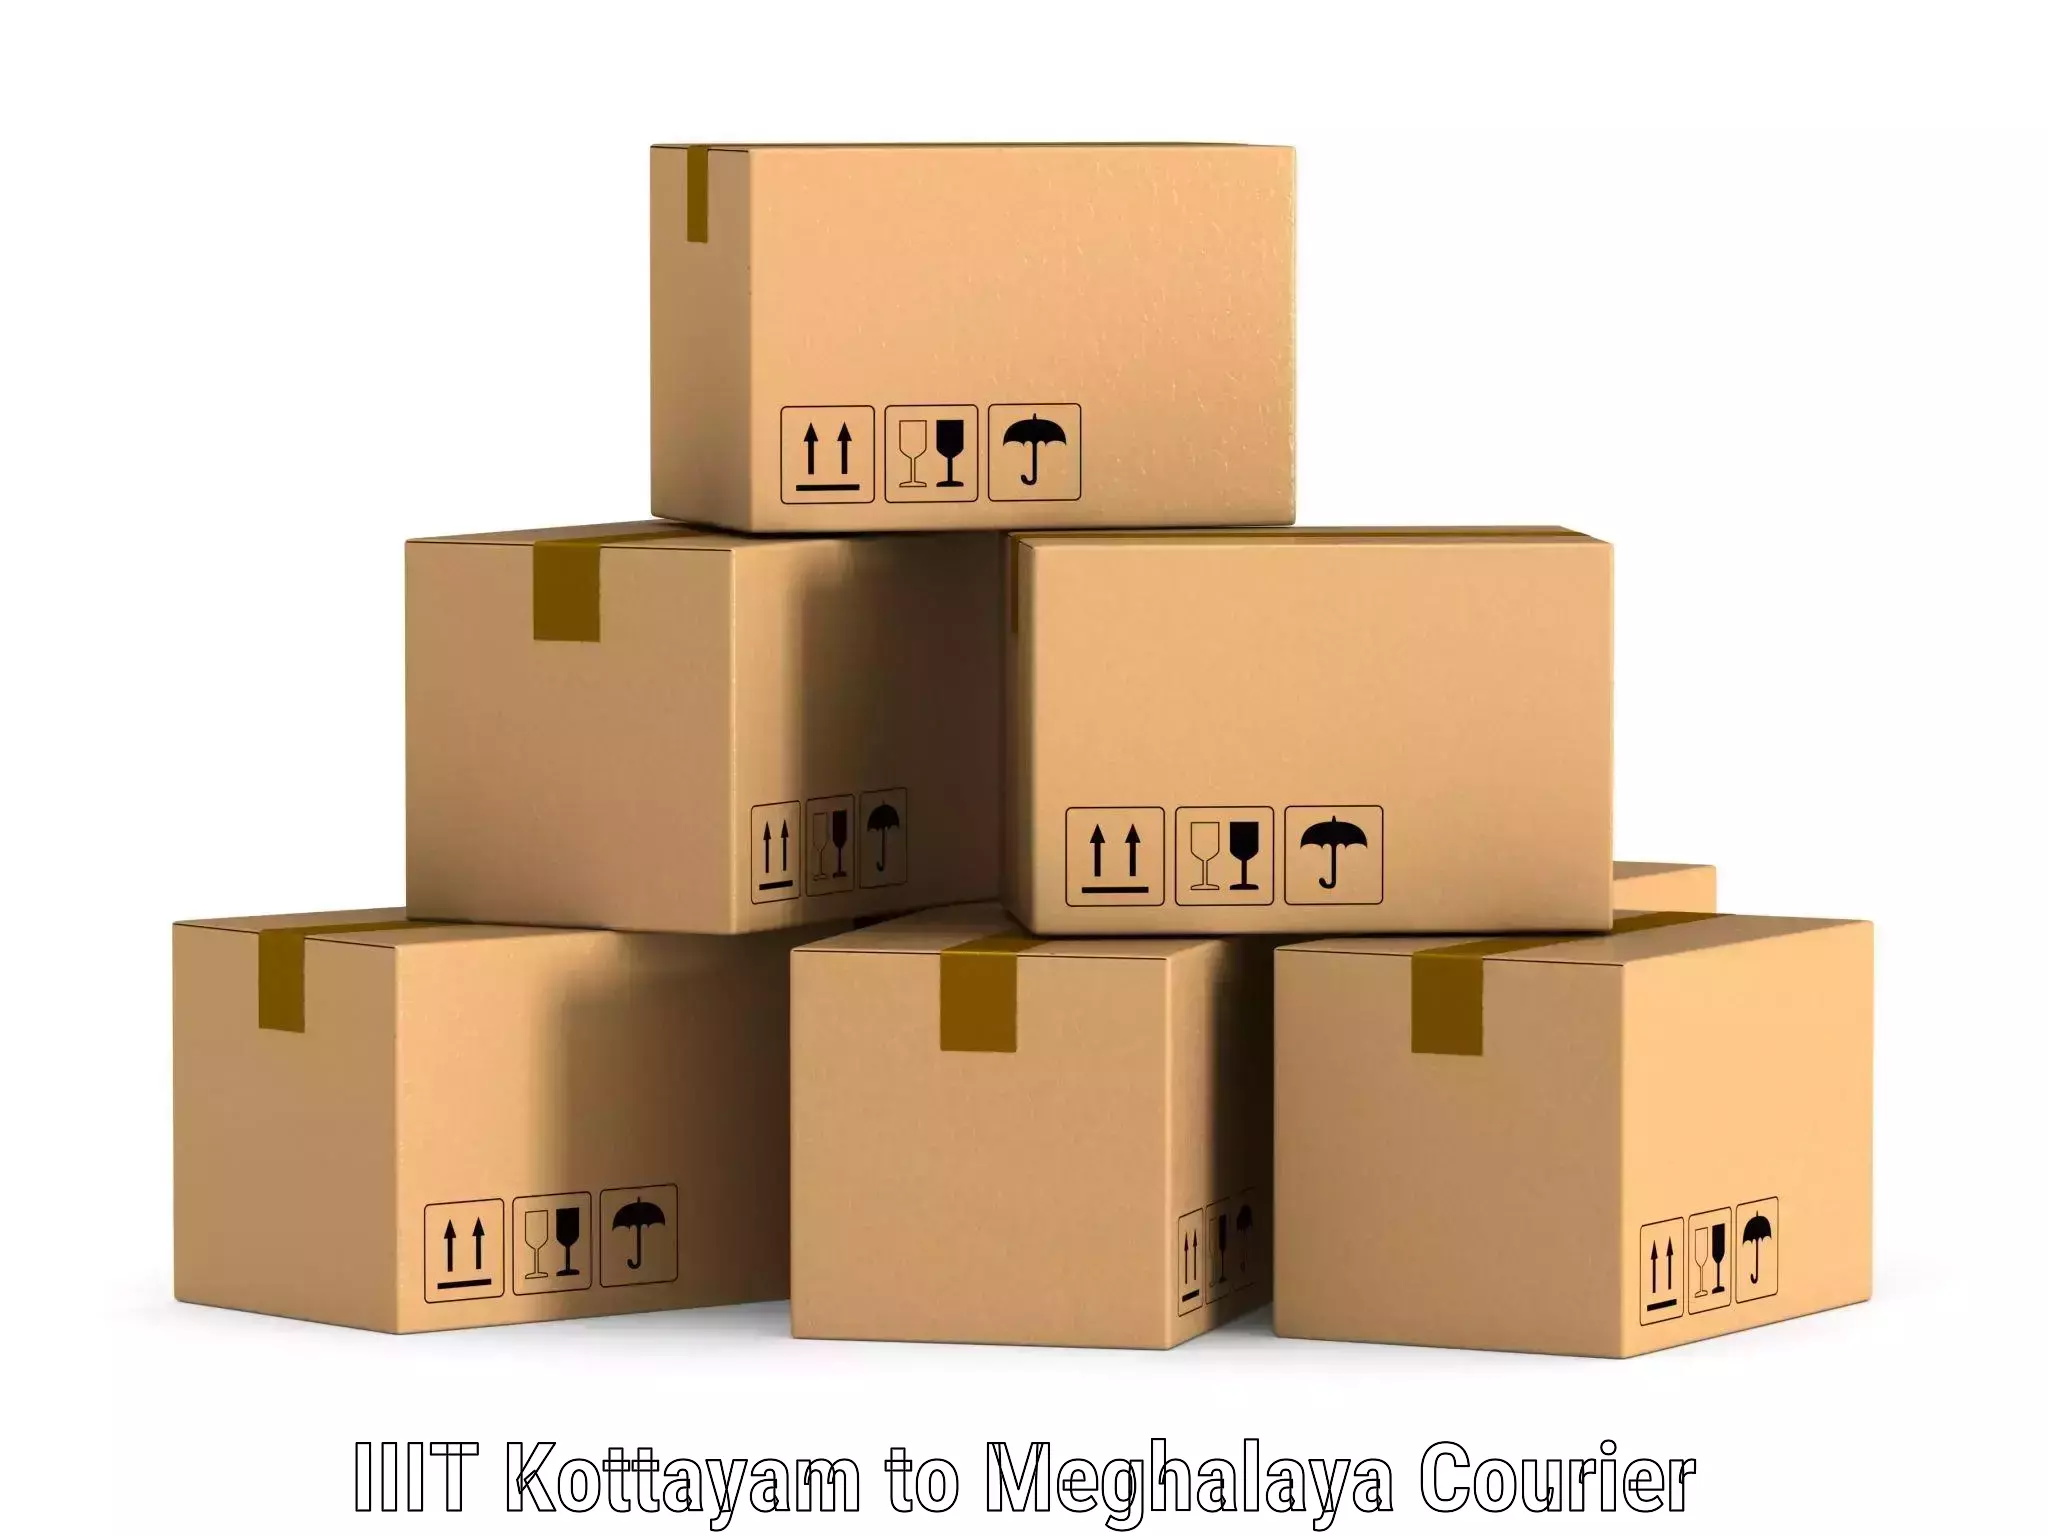 Modern courier technology IIIT Kottayam to Williamnagar